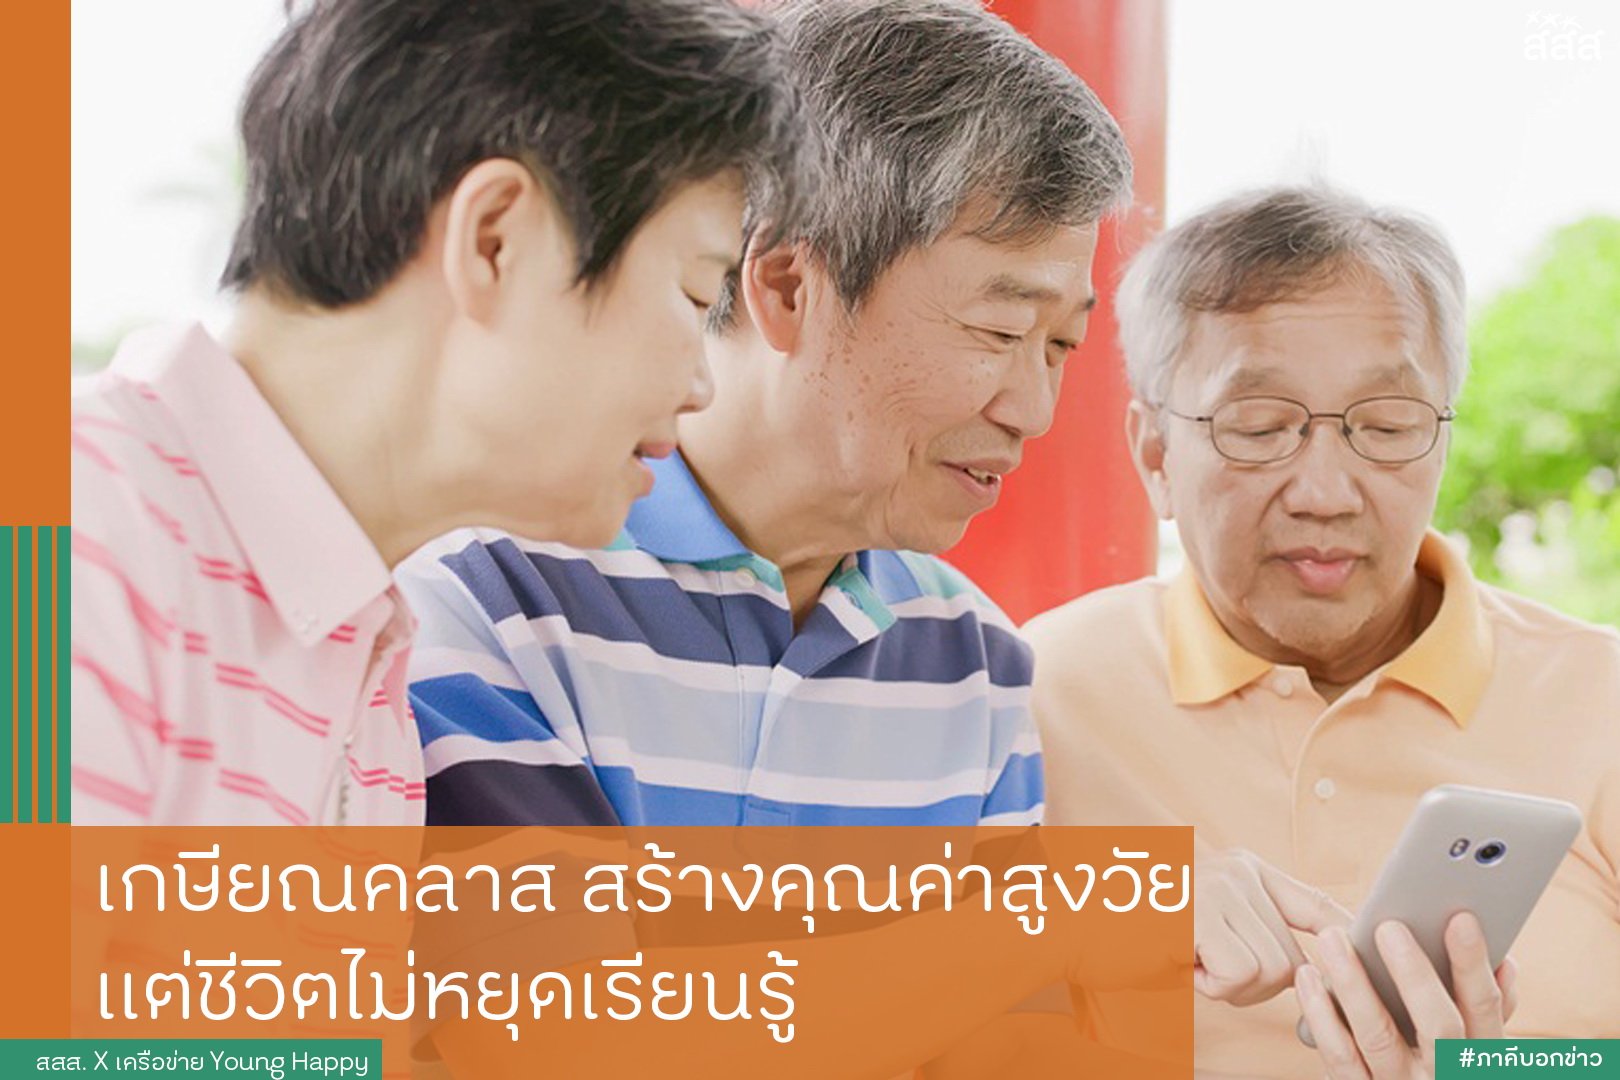 เกษียณคลาสสร้างคุณค่าสูงวัย แต่ชีวิตไม่หยุดเรียนรู้ thaihealth